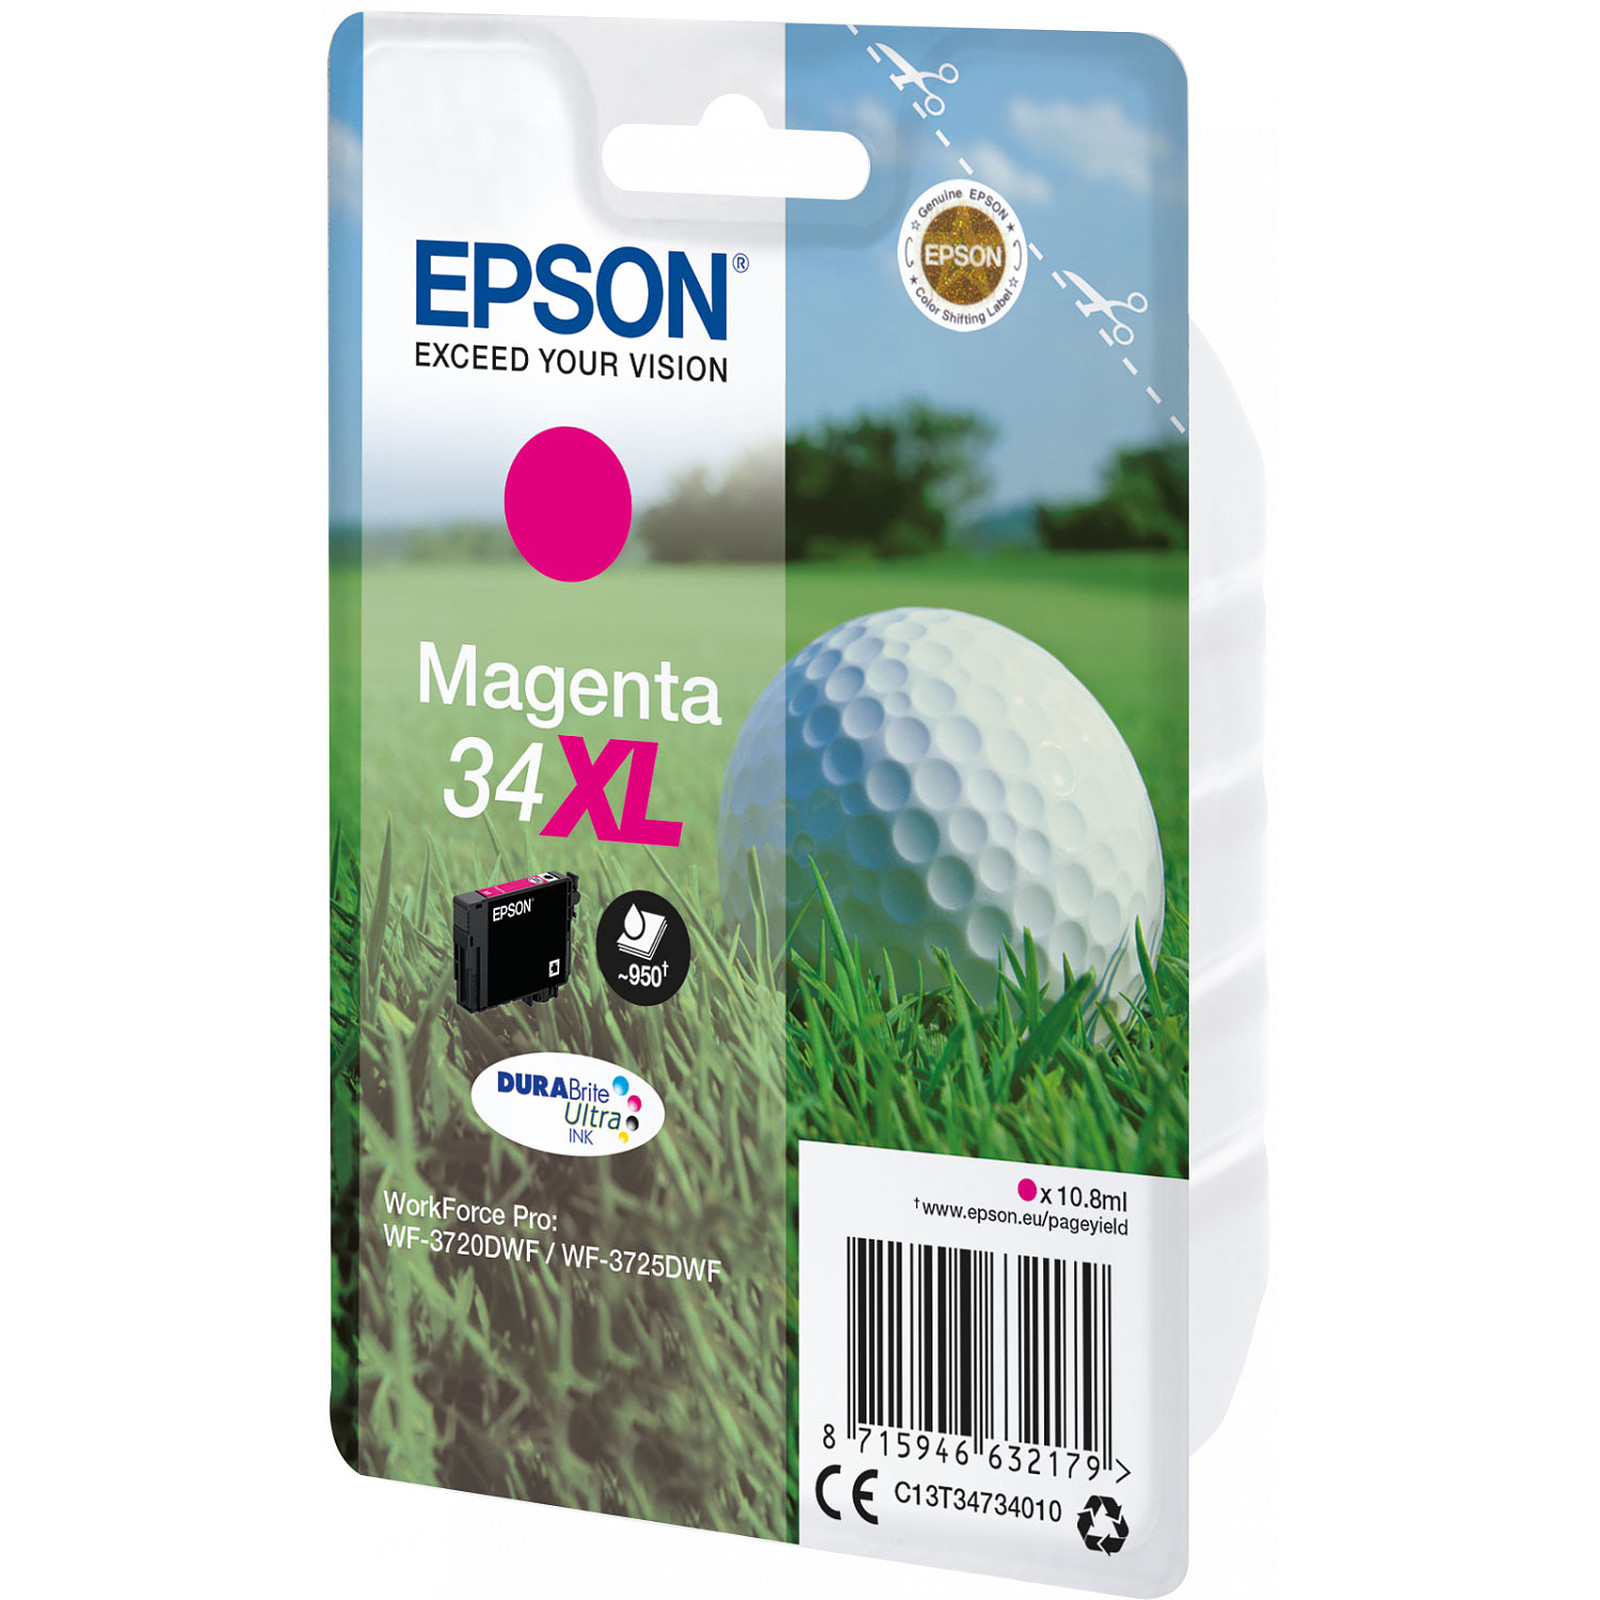 Epson Balle de Golf Magenta 34XL - Cartouche imprimante Epson